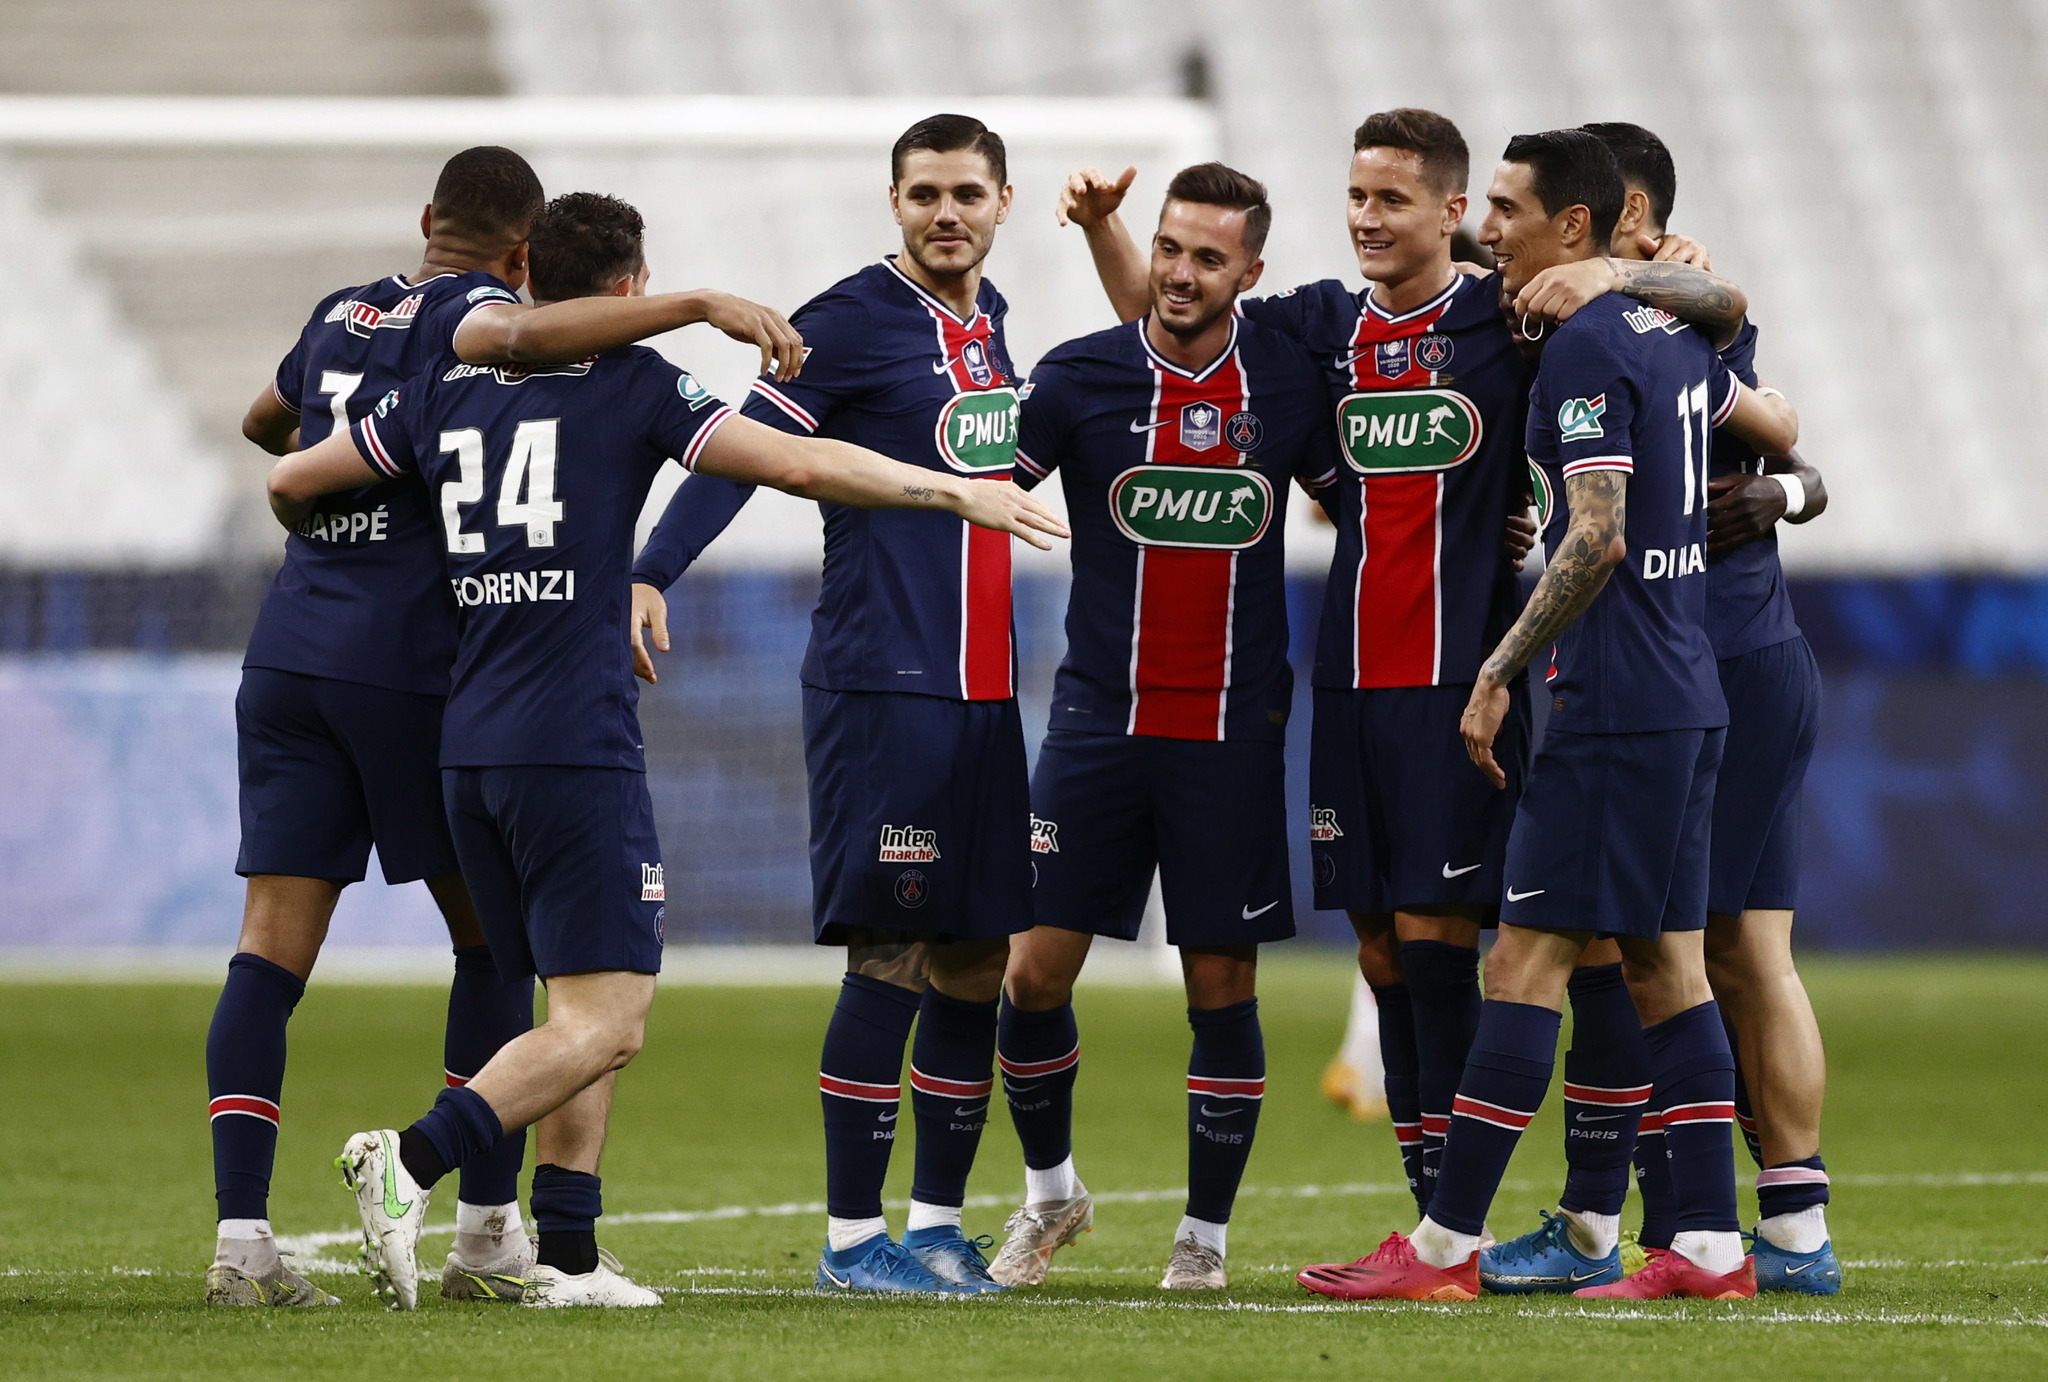 El PSG se apodera de la Copa de Francia gracias a Mbapp